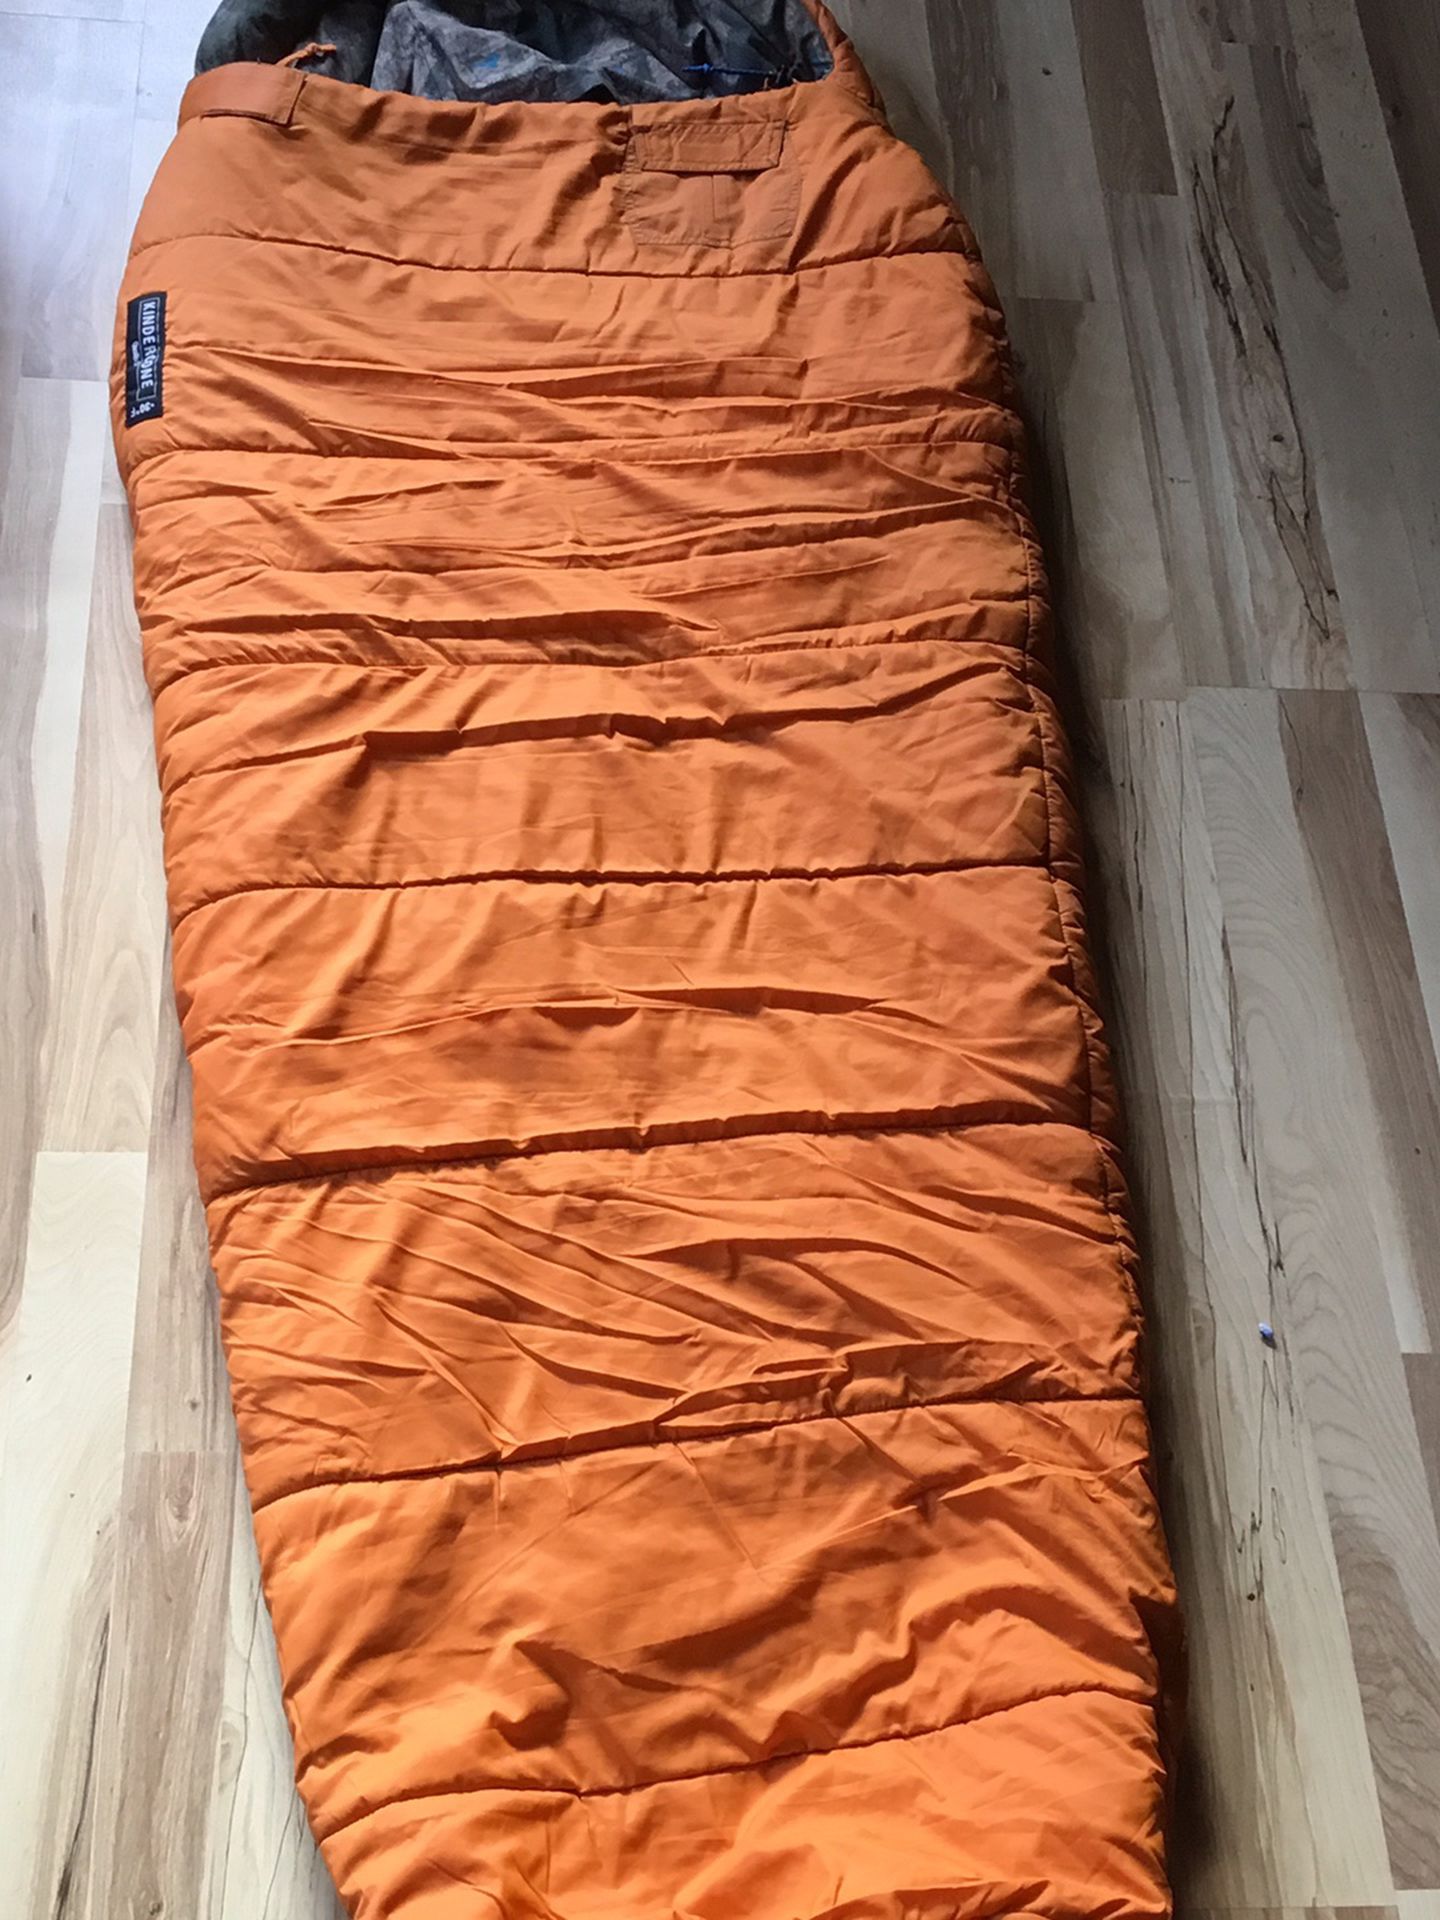 REI Kindercone Sleeping Bag (5’5”)